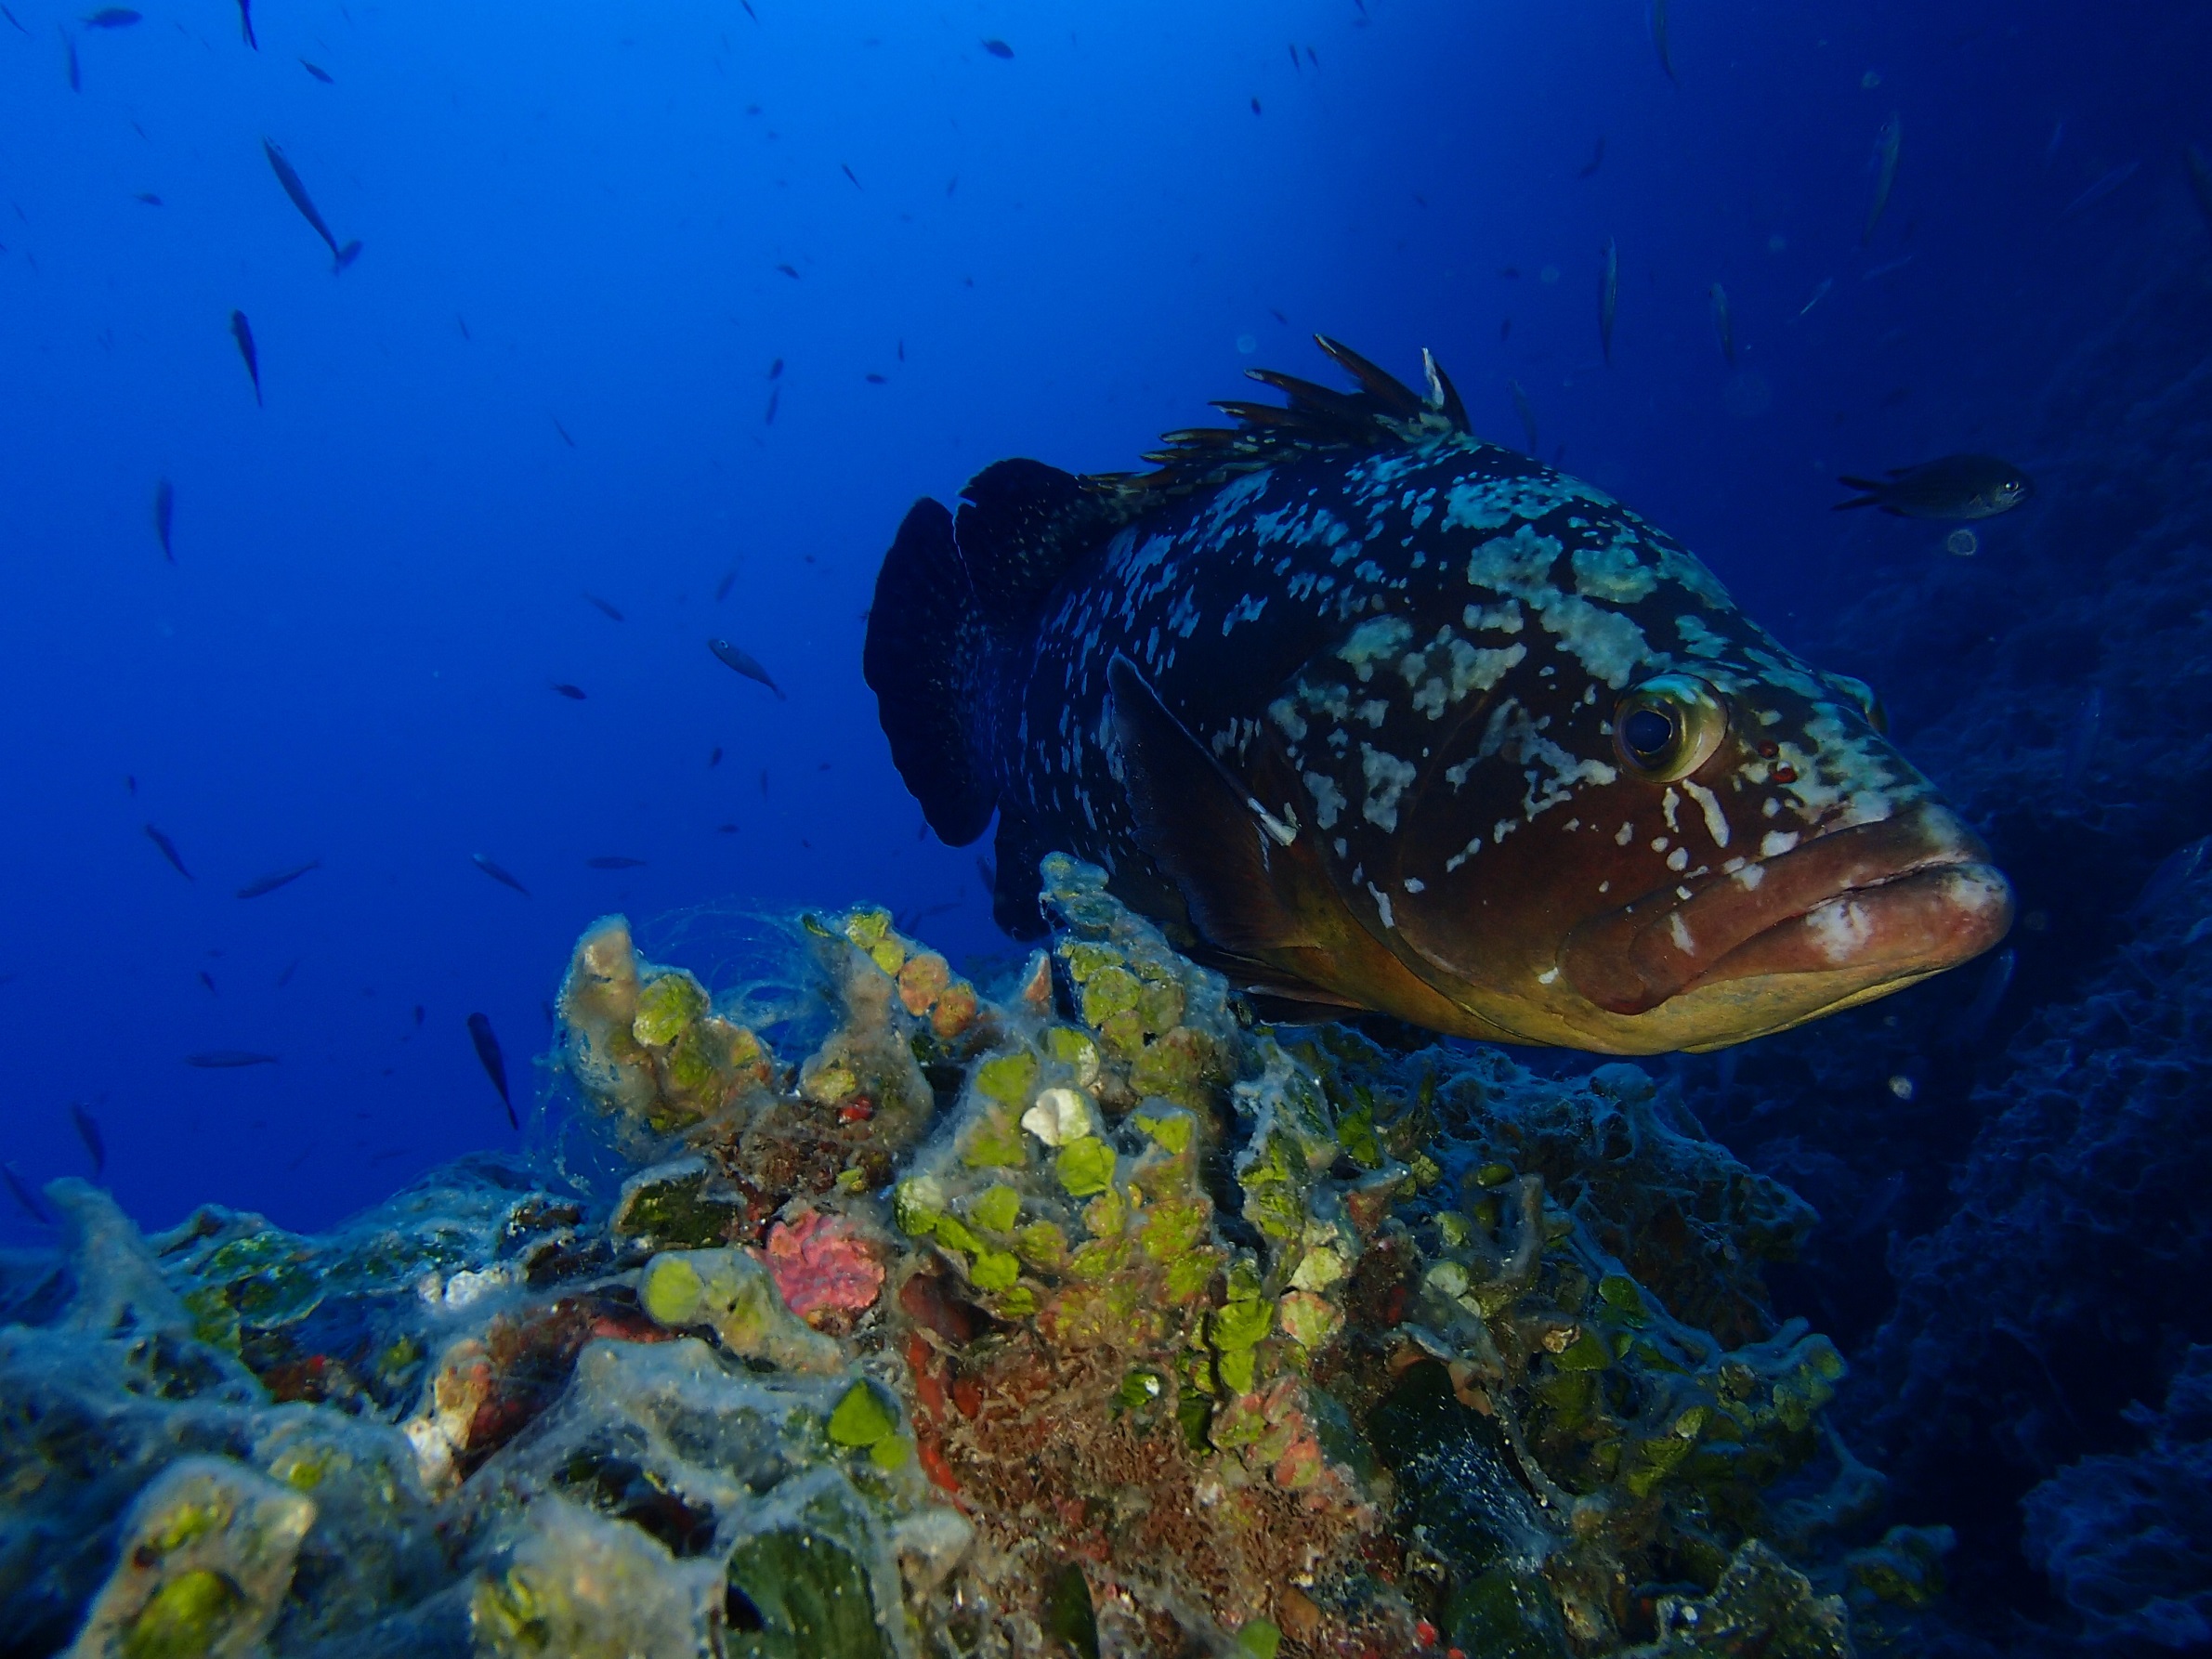 Las reservas marinas favorecen la recuperación de especies sedentarias como el mero, pero no de o...